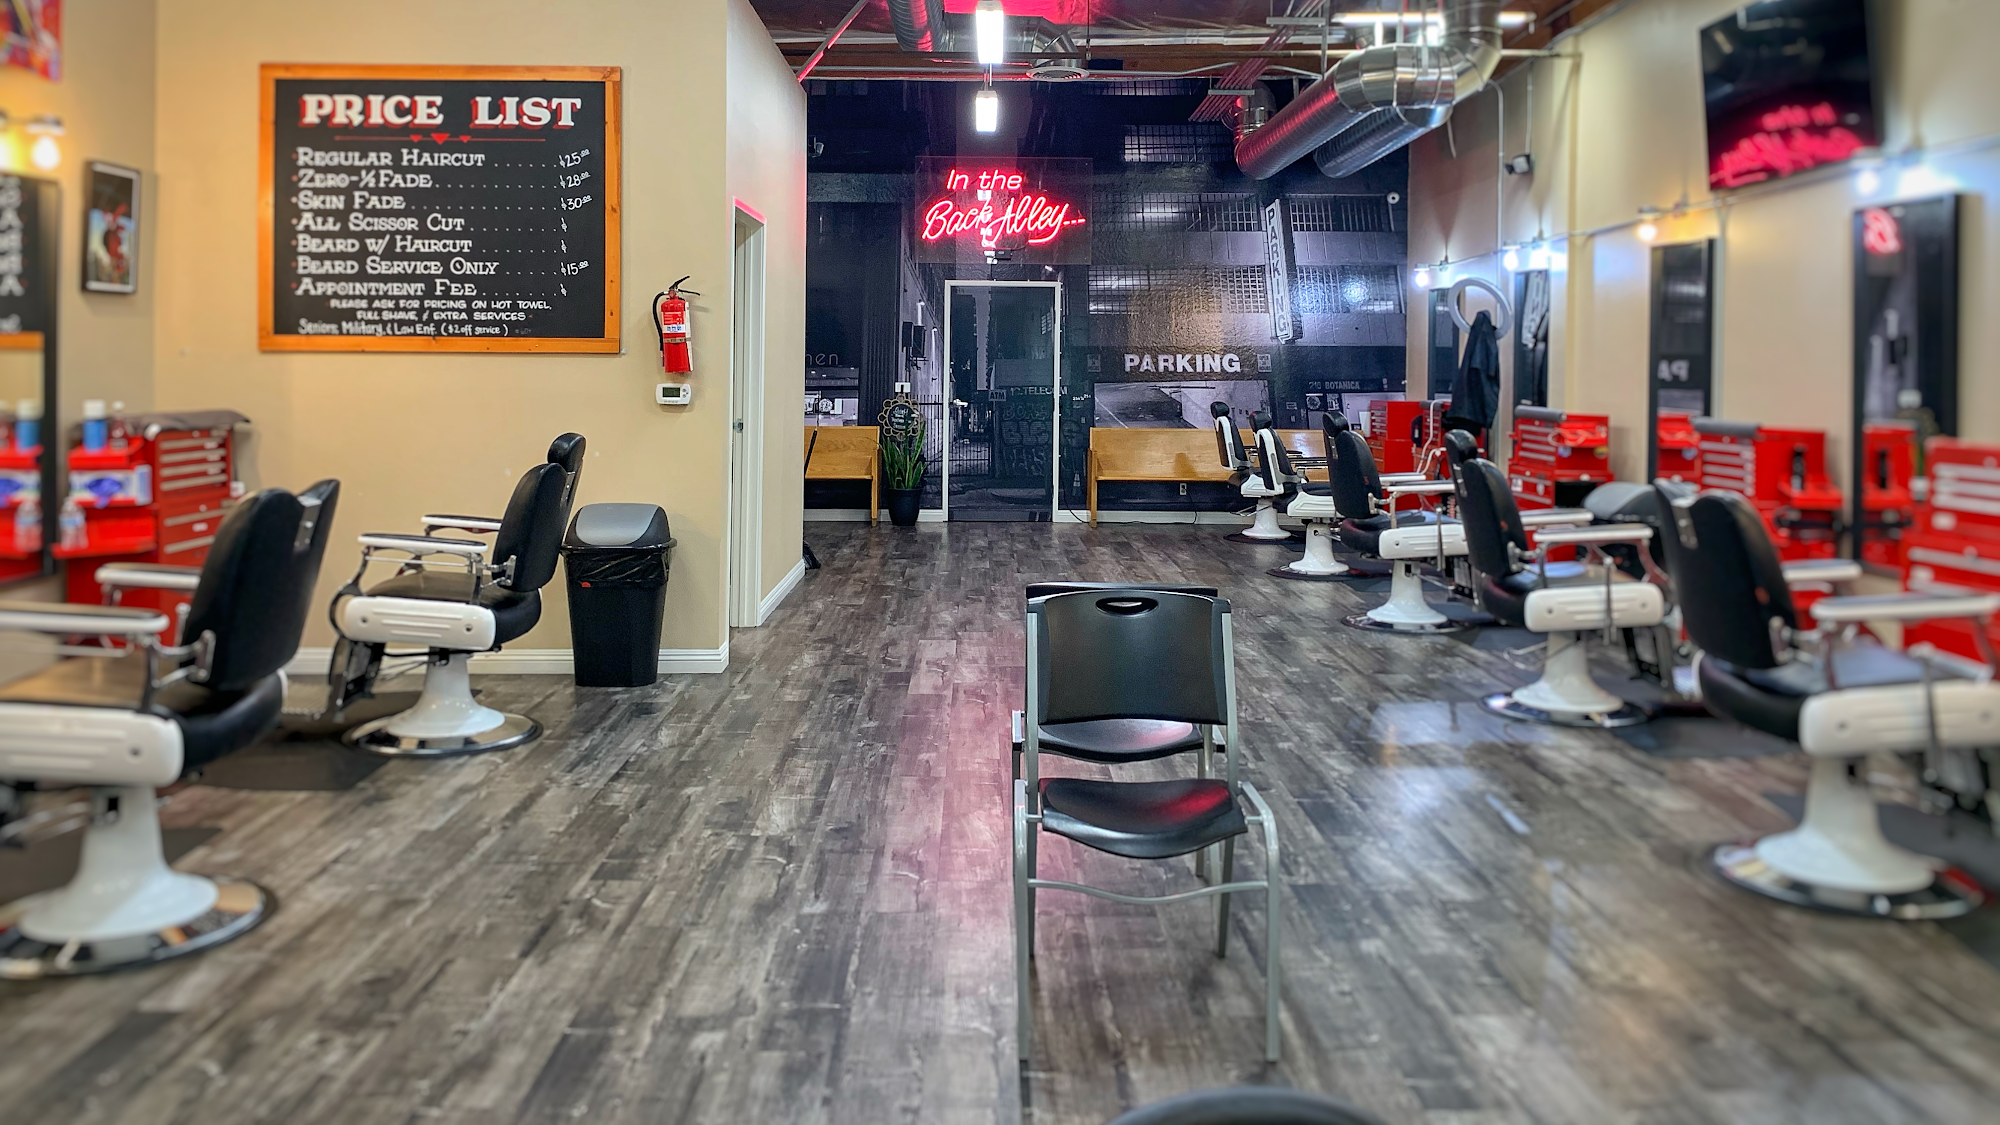 The Original Clip Joint Barbershop - San Dimas